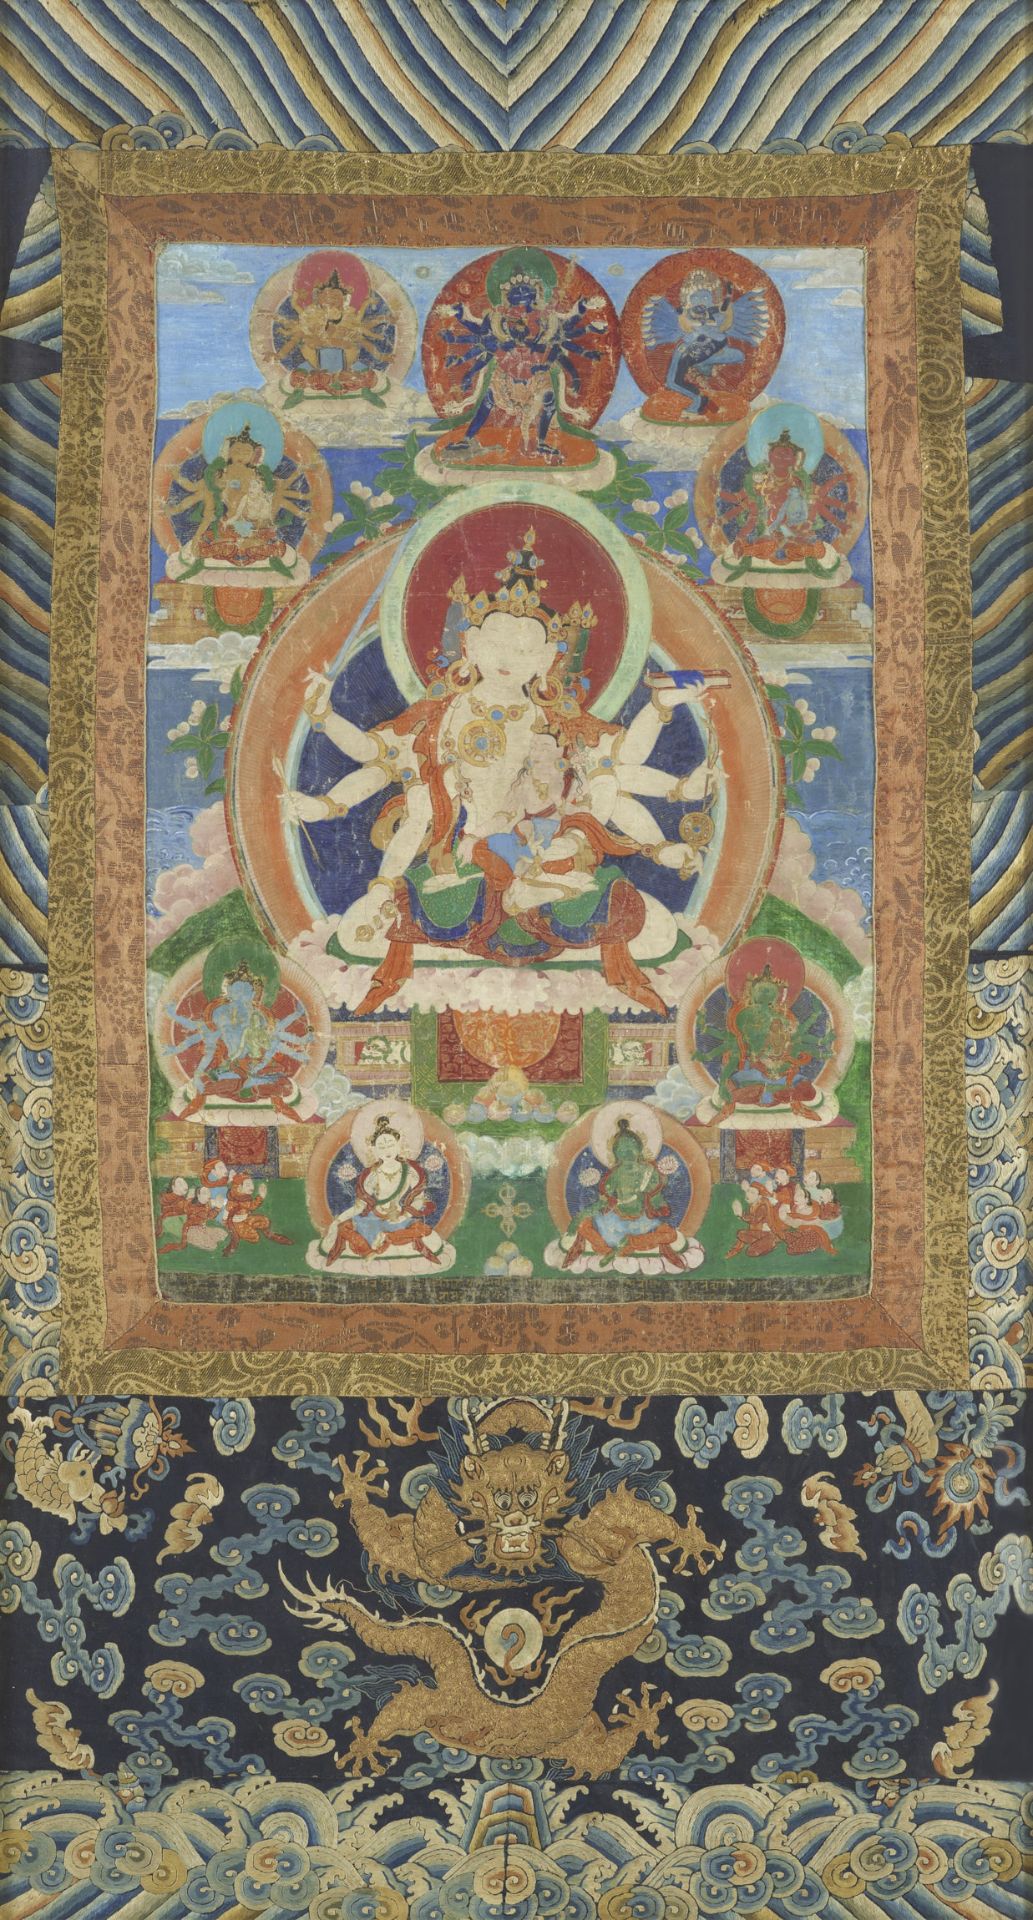 A fine thangka of Dharmadhatu Vagishvara Manjushri. Tibet, 18th century